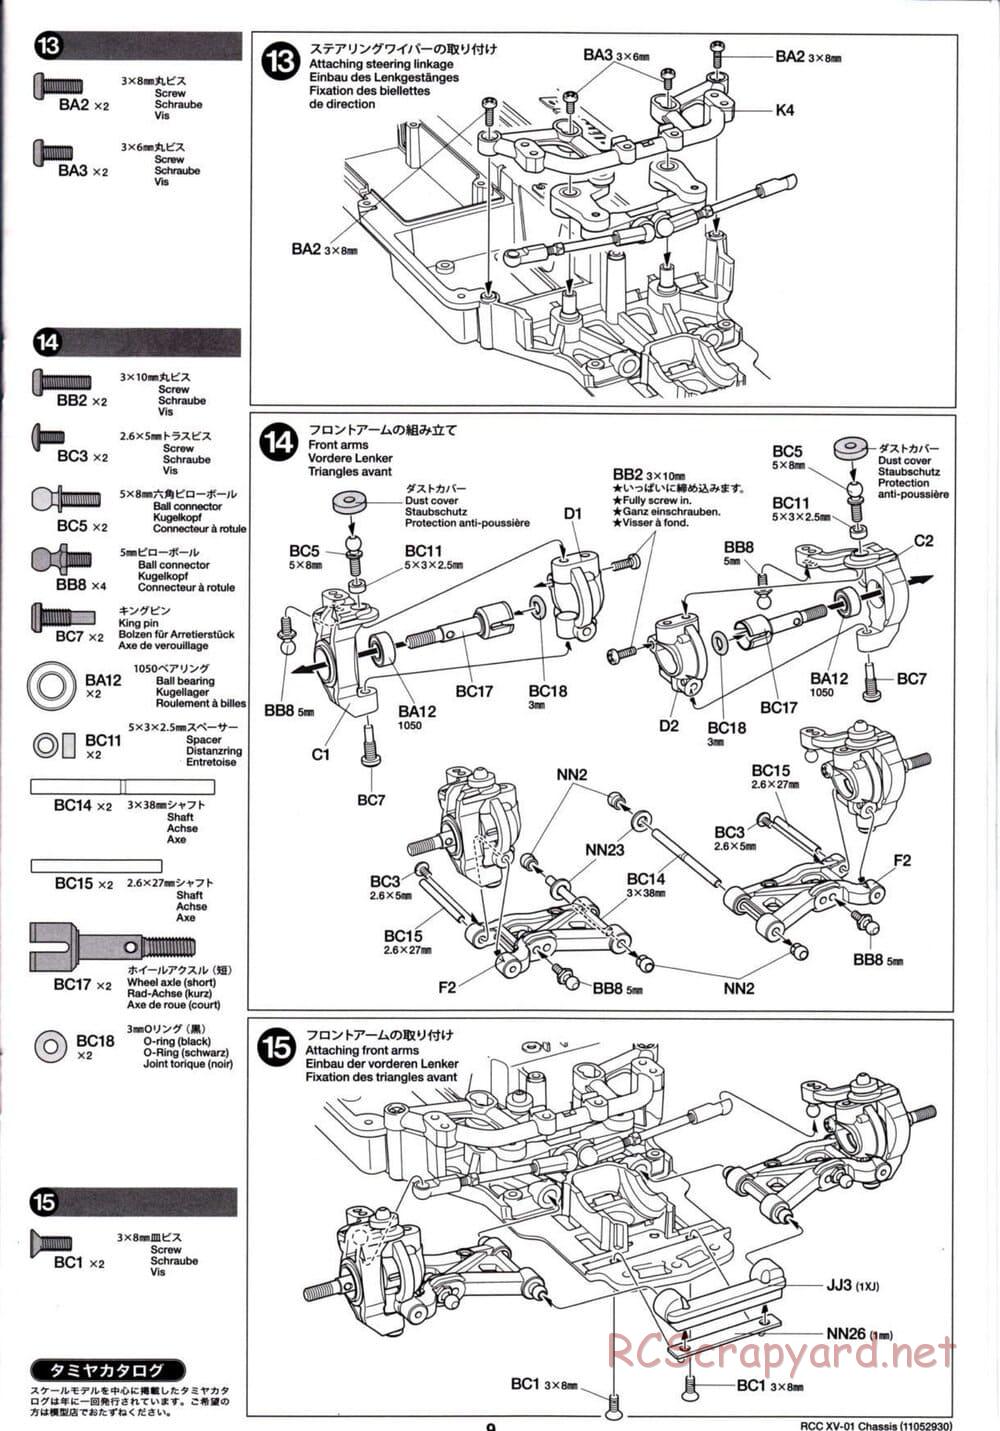 Tamiya - XV-01 Chassis - Manual - Page 9